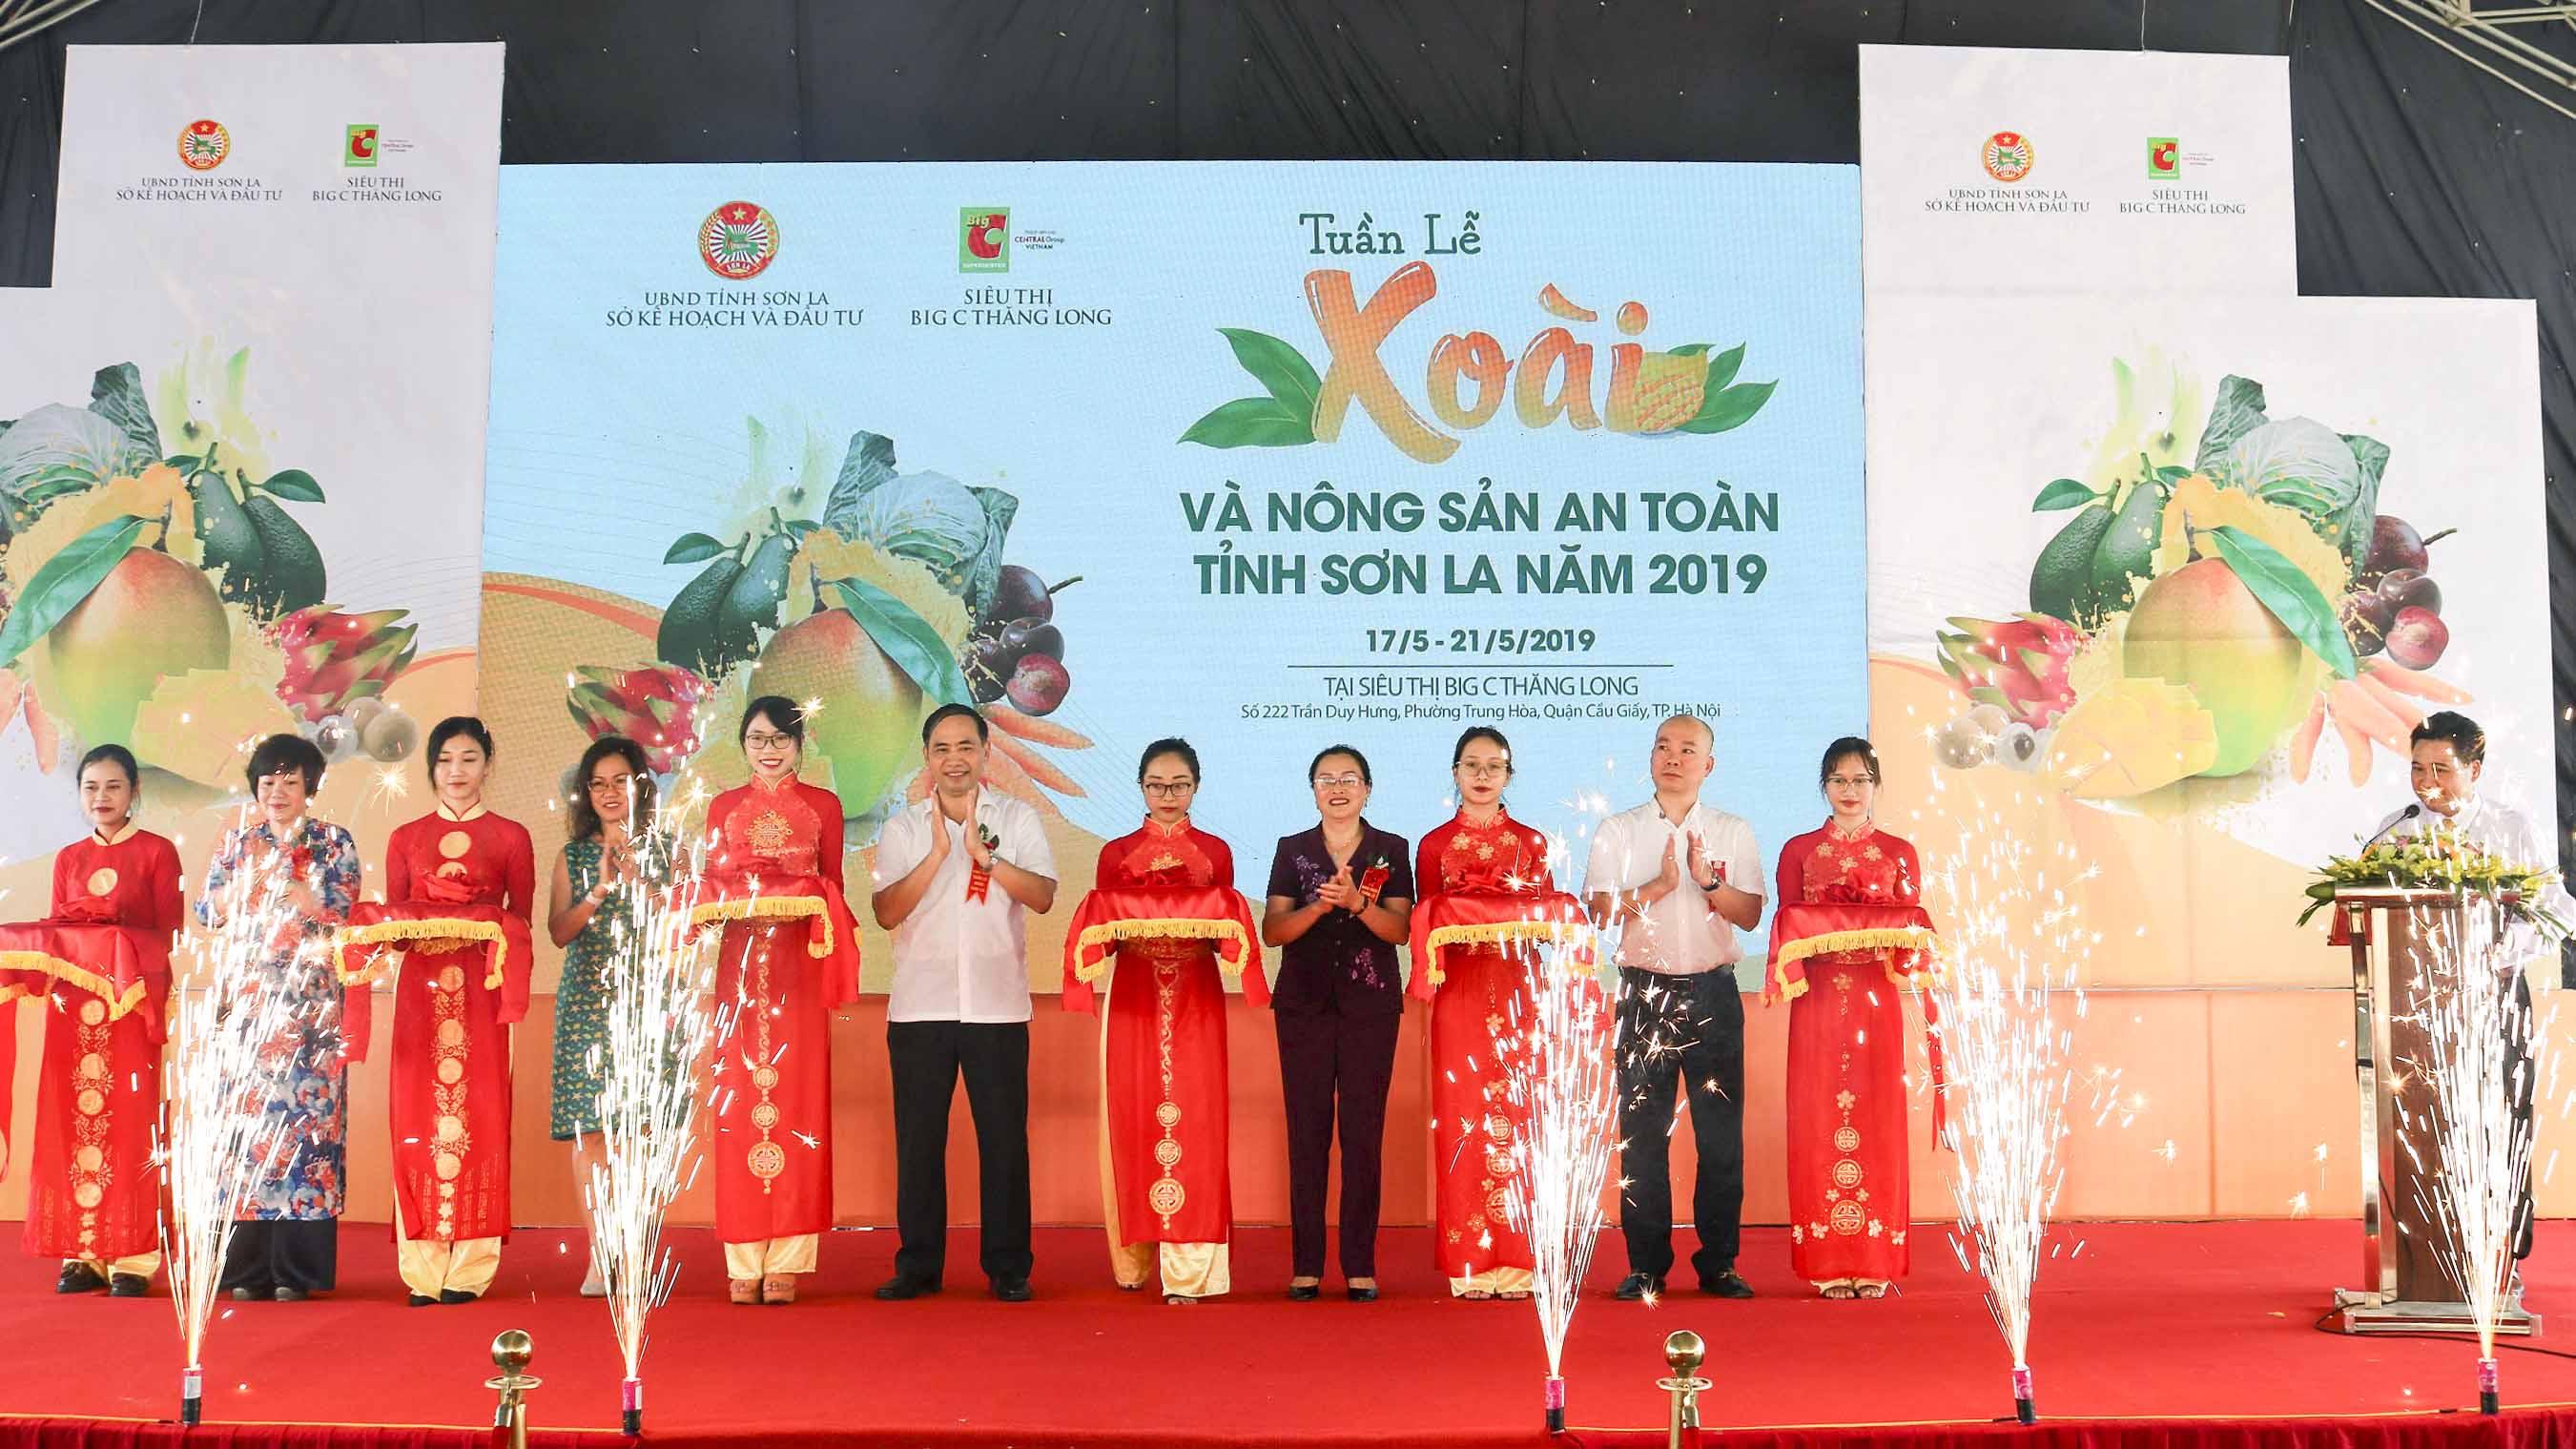 Nghi thức khai mạc Tuần lễ Xoài và nông sản an toàn tỉnh Sơn La 2019